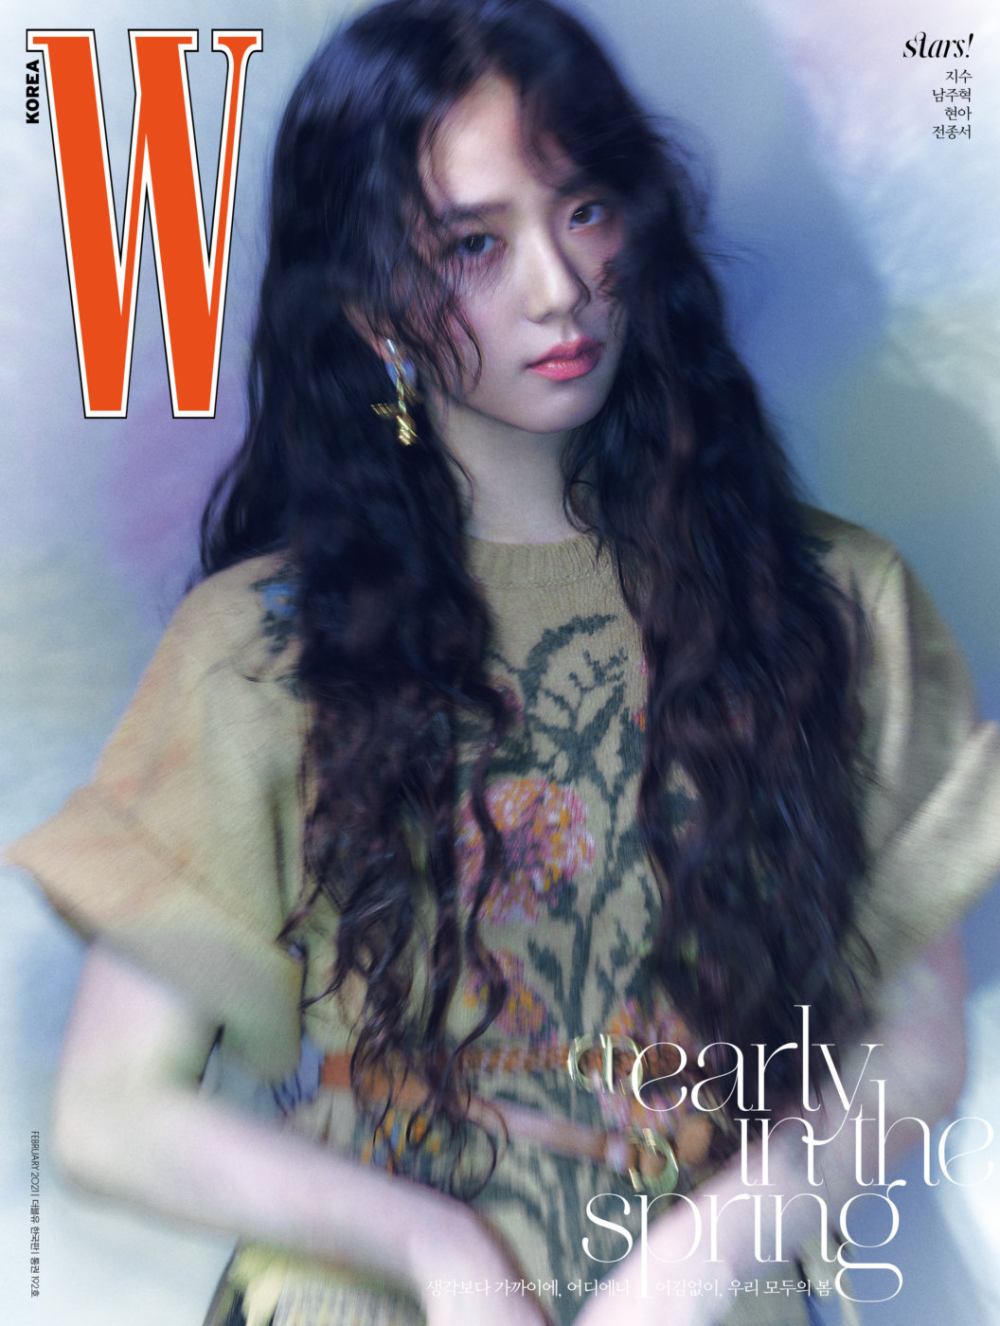 Джису из BLACKPINK украсила обложку W magazine своей элегантной красотой